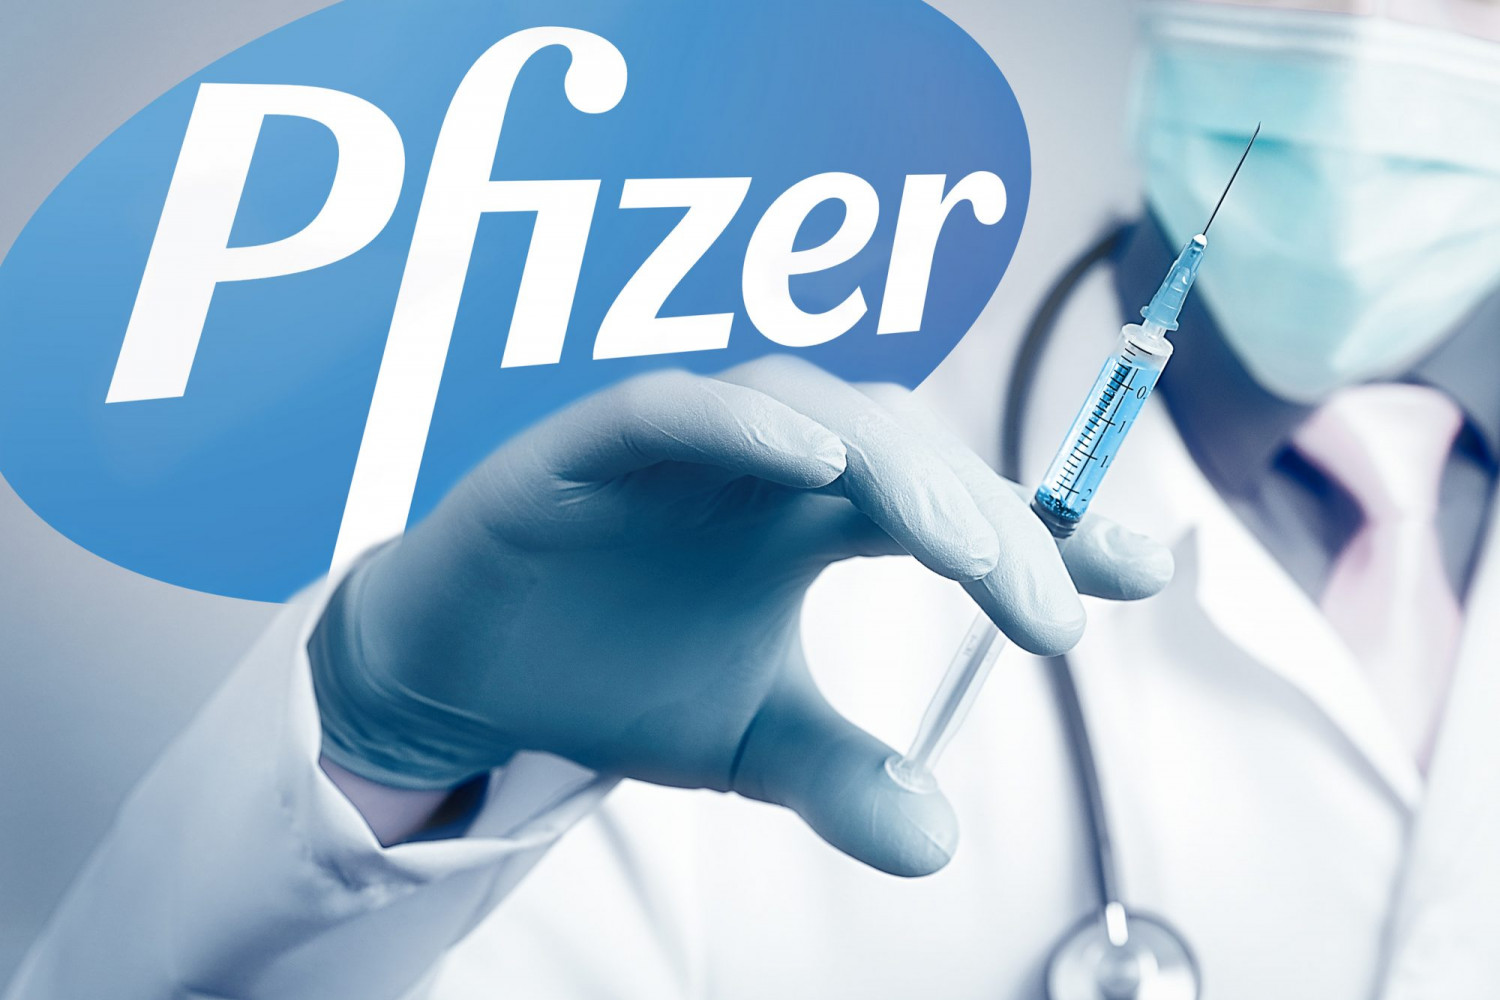 Vaccine của Pfizer hiện vẫn đứng “đầu bảng” tại Hungary - Ảnh: Megabablo999 (openaccessgovernment.org)